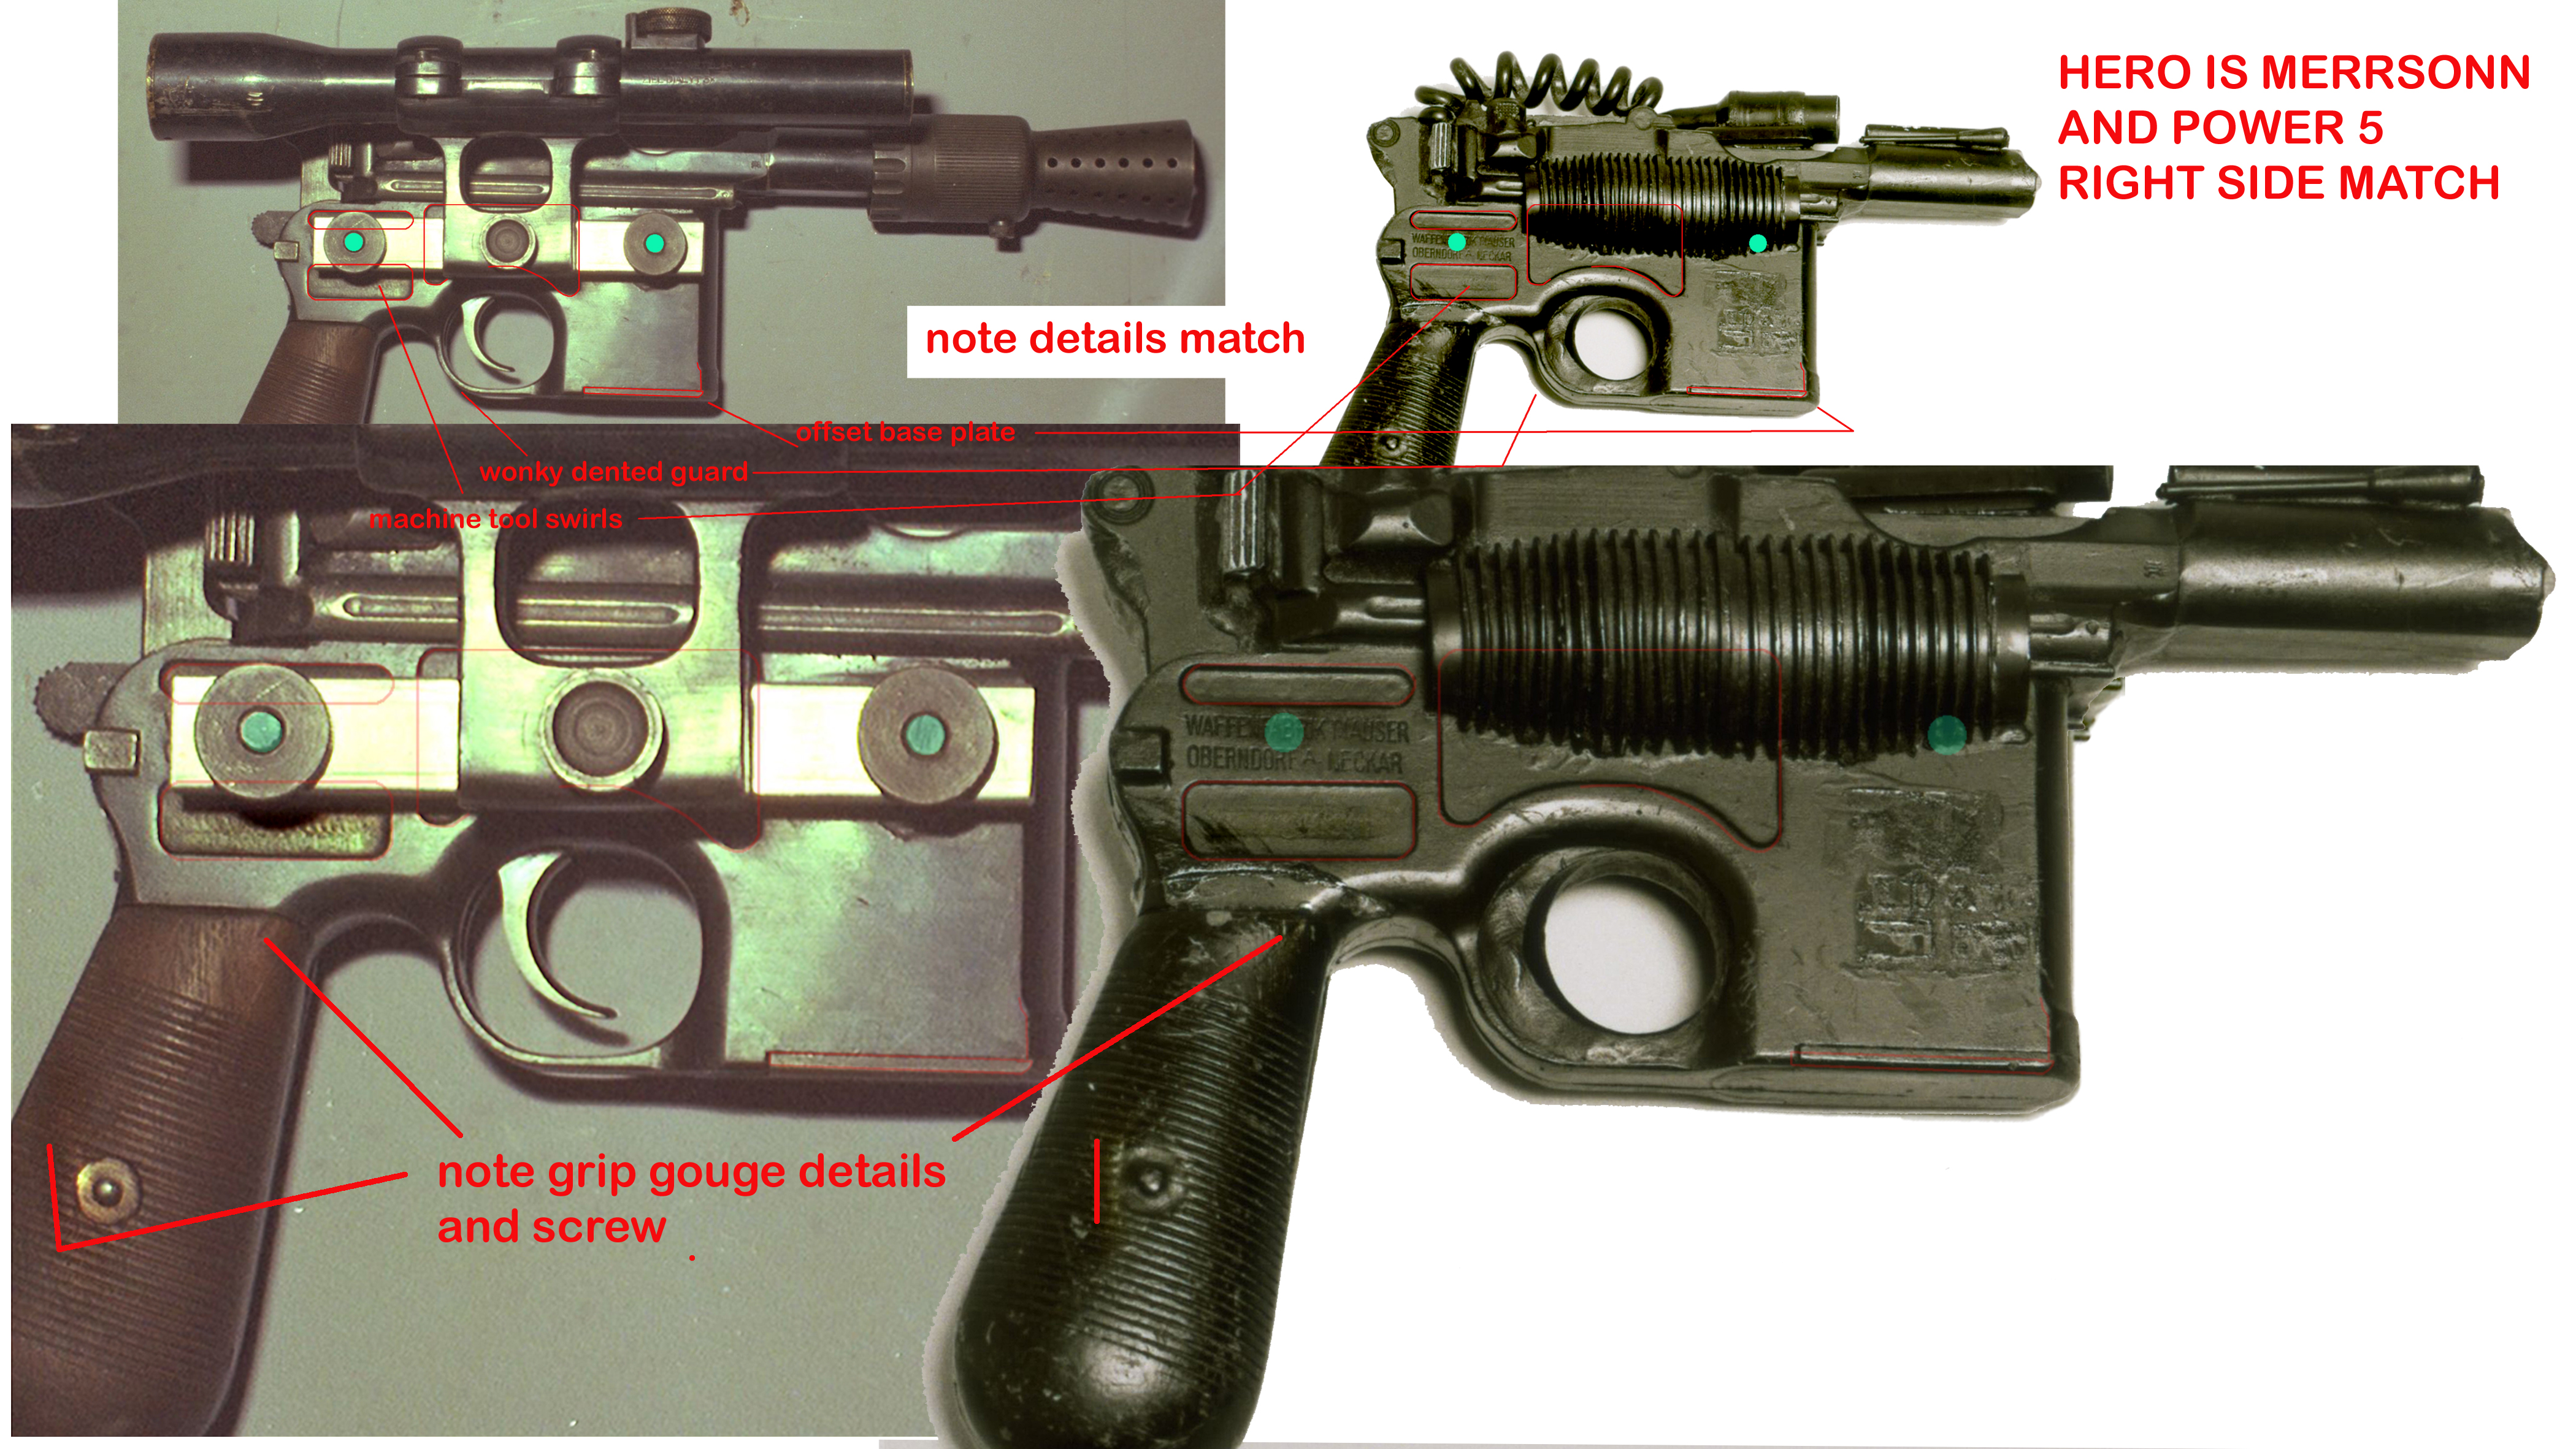 blaster-right-side-proof-hero-merrsonnfor-post-jpg.jpg